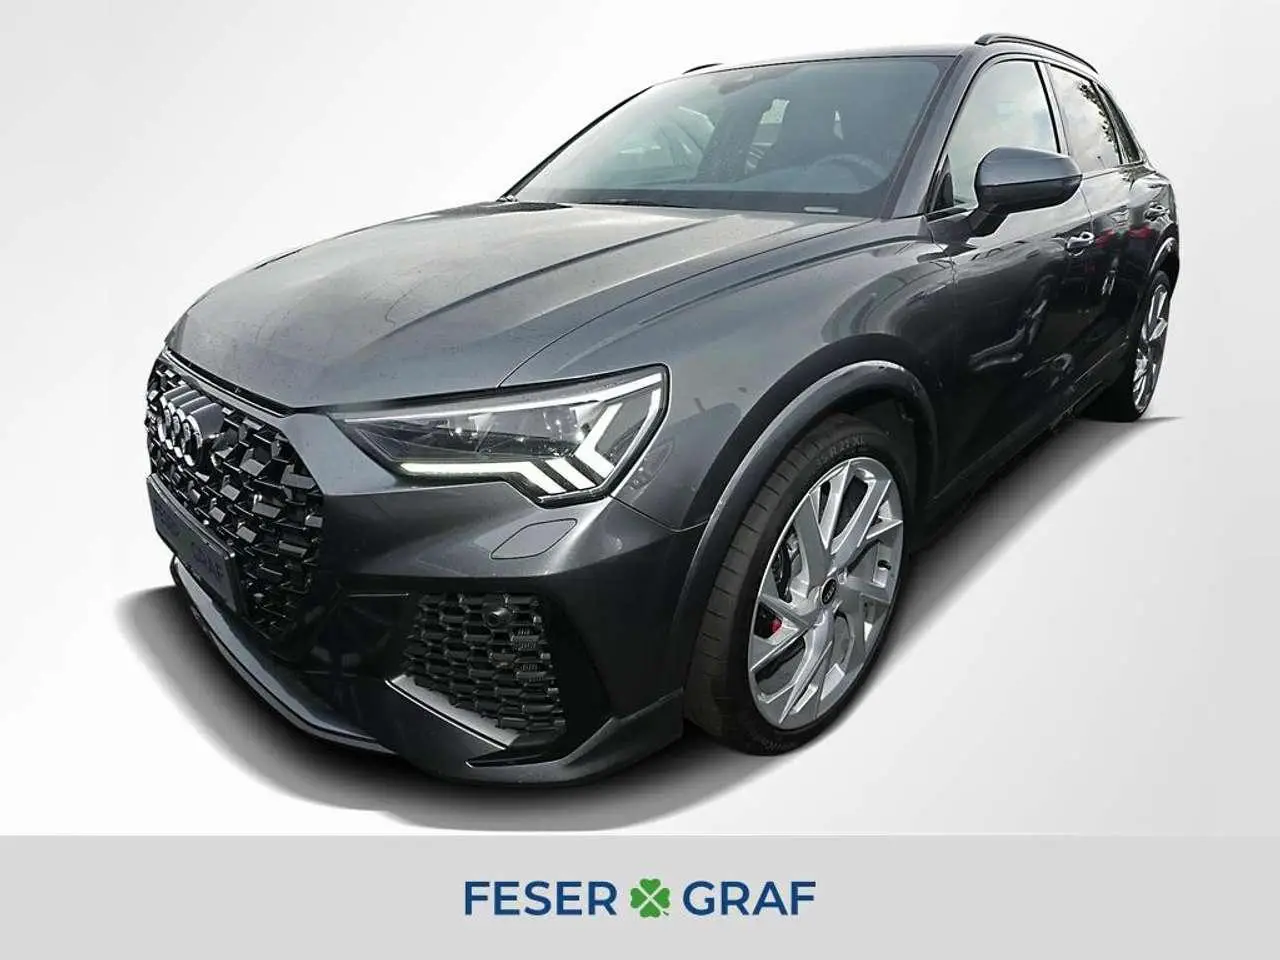 Photo 1 : Audi Rsq3 2021 Petrol